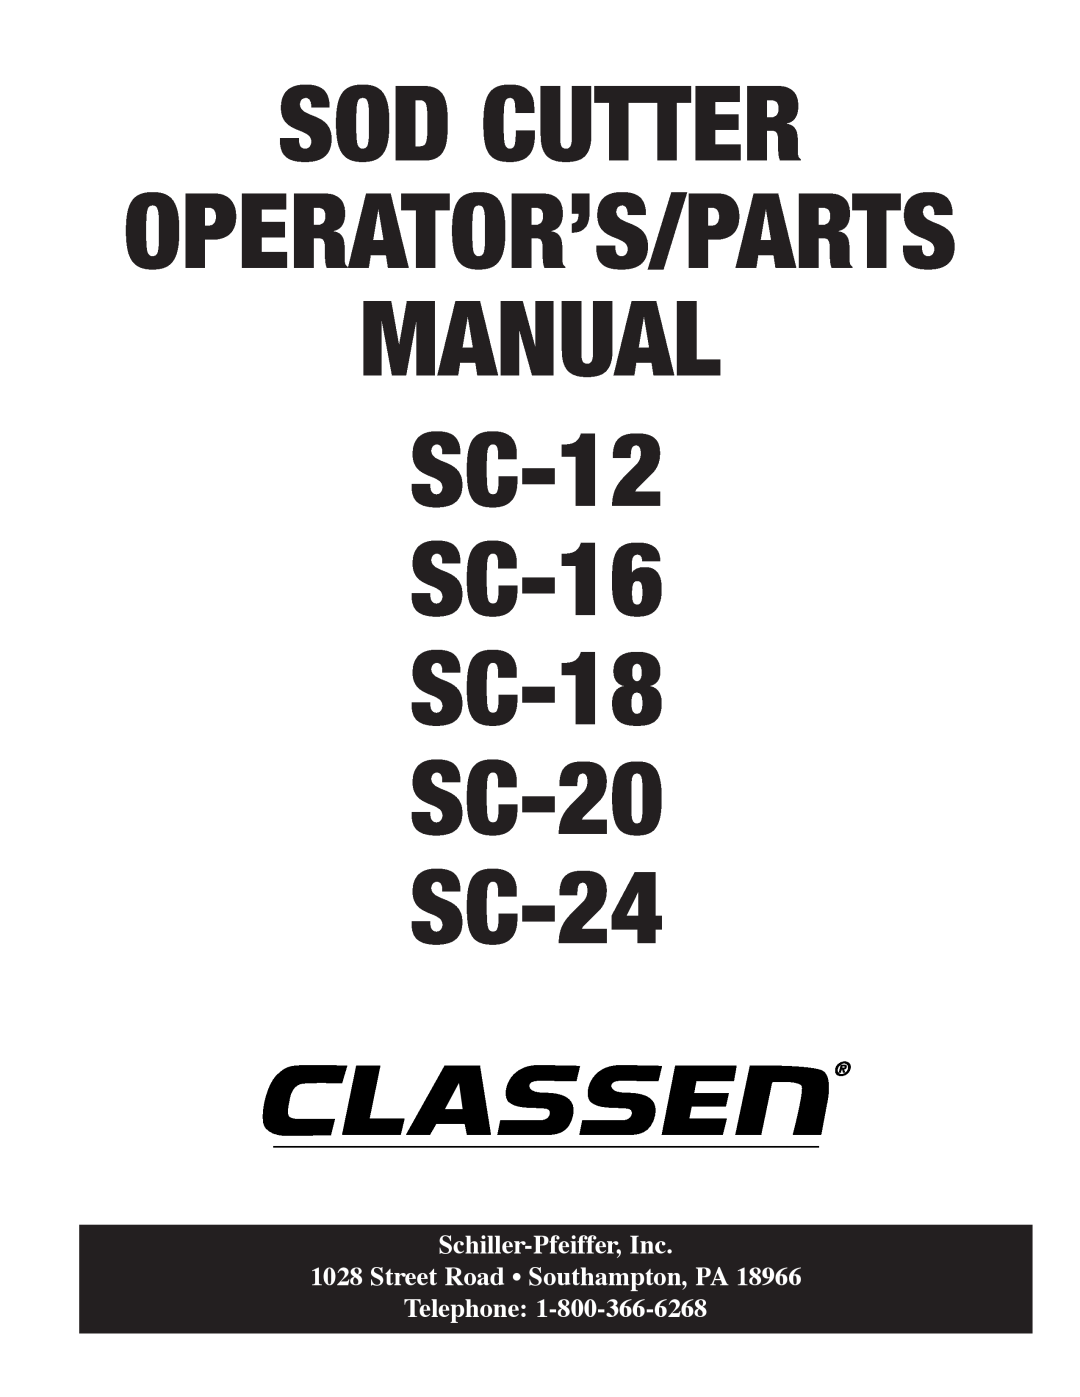 Classen manual Sod Cutter, Manual, SC-12 SC-16 SC-18 SC-20 SC-24, Schiller-Pfeiffer,Inc, Operator’S/Parts 